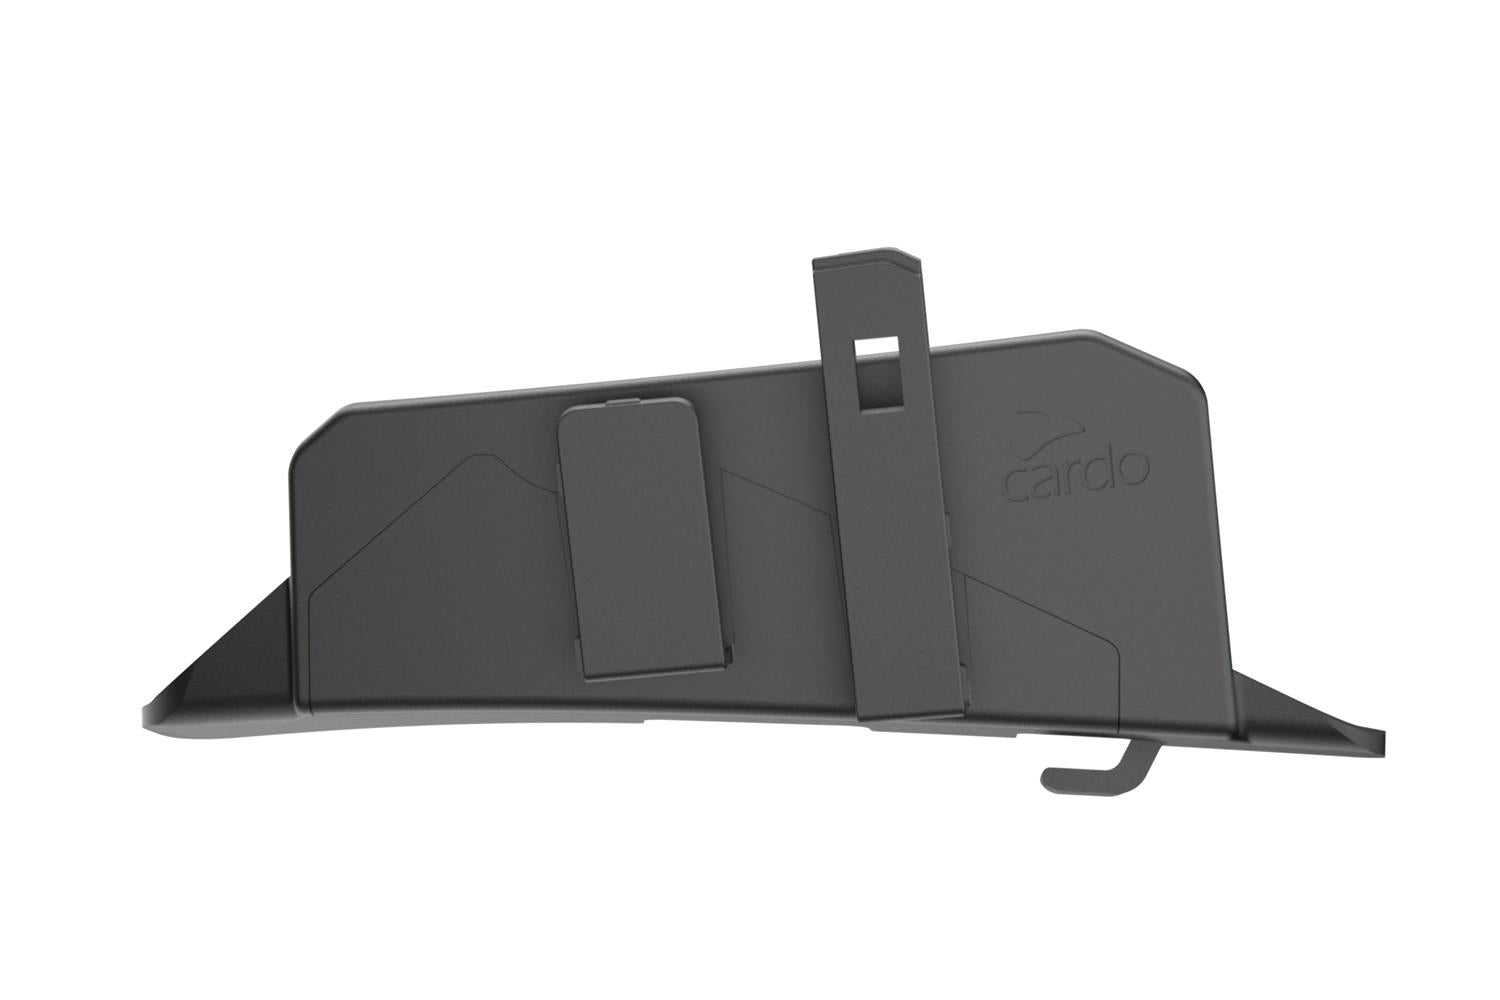 DR MOTO, Cardo Shoei Adapter for Packtalk Edge/Neo/Custom